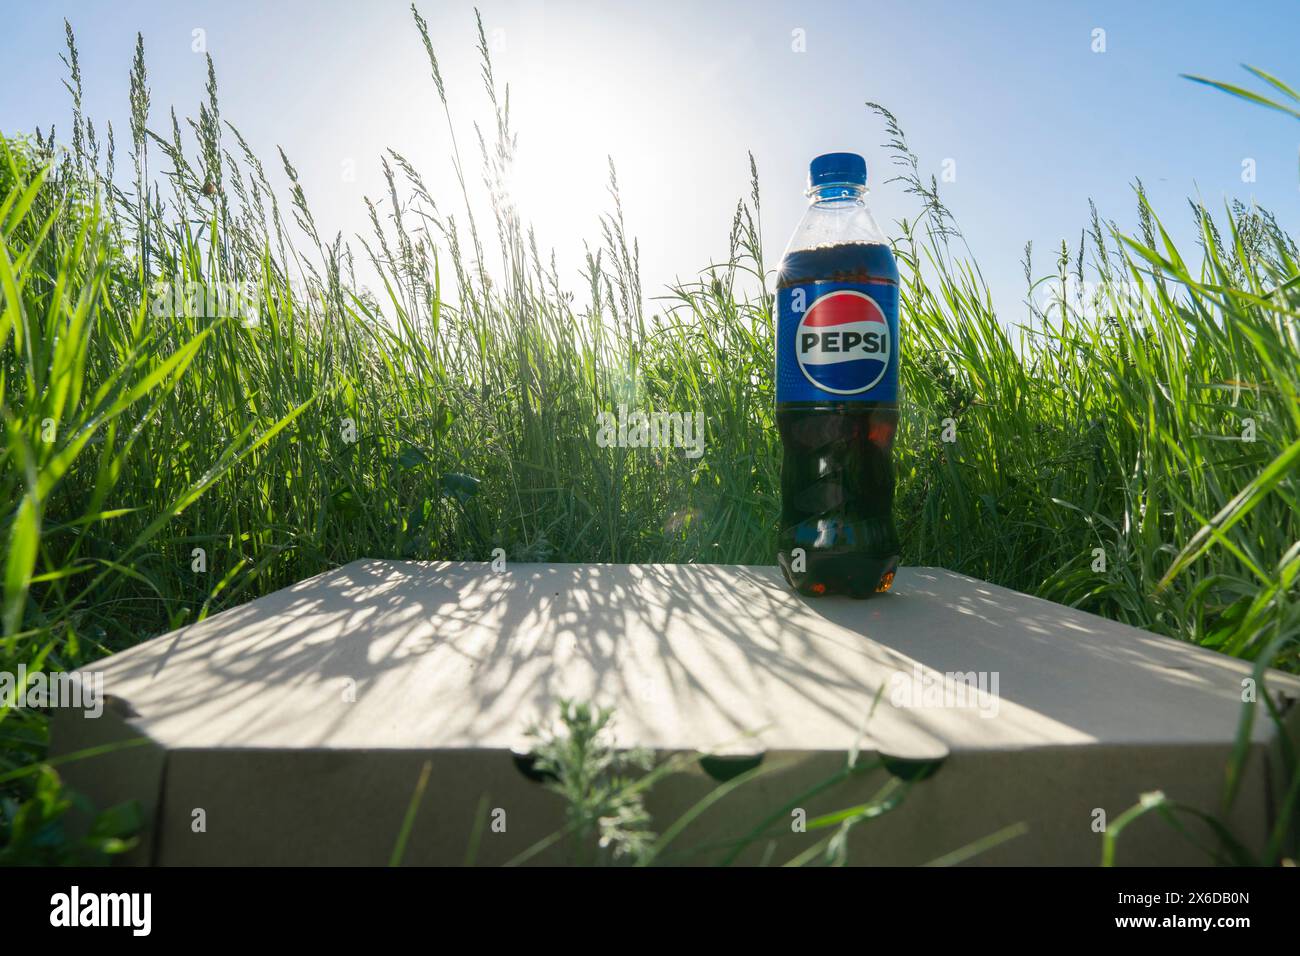 Une bouteille d'un demi-litre de Pepsi Cola se tient sur une boîte en carton fermée avec de la pizza sur l'herbe verte par une journée d'été ensoleillée. Vue depuis le point inférieur Banque D'Images